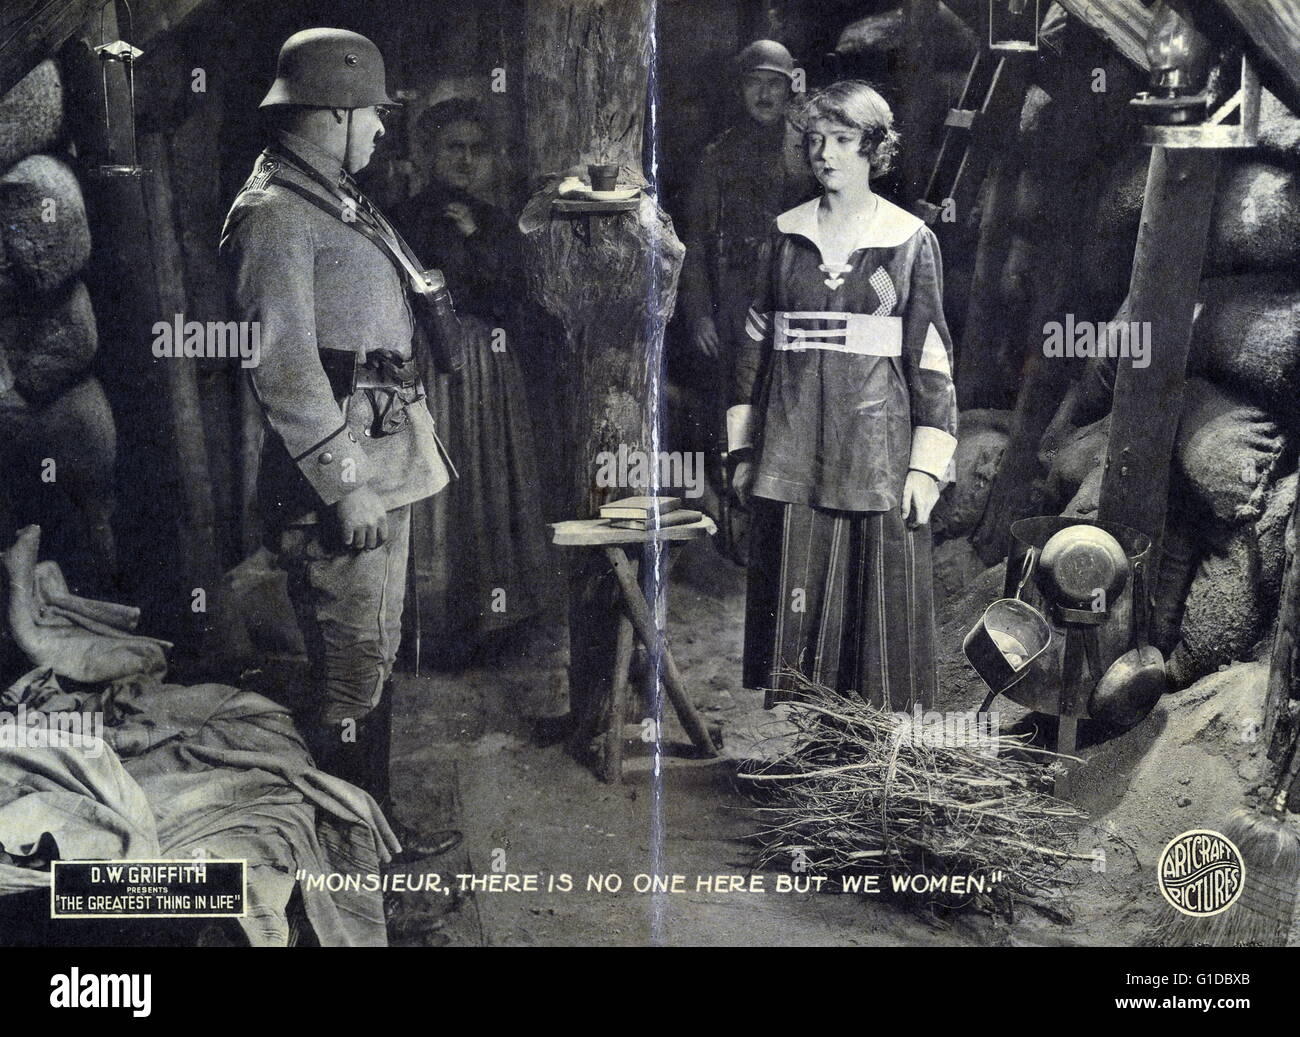 La lobby e carta per 'La cosa più grande nella vita" 1918. mostra Lillian Gish nel bunker sotterraneo rivolta verso il funzionario tedesco; Kate Bruce in piedi in background con Soldier. Foto Stock